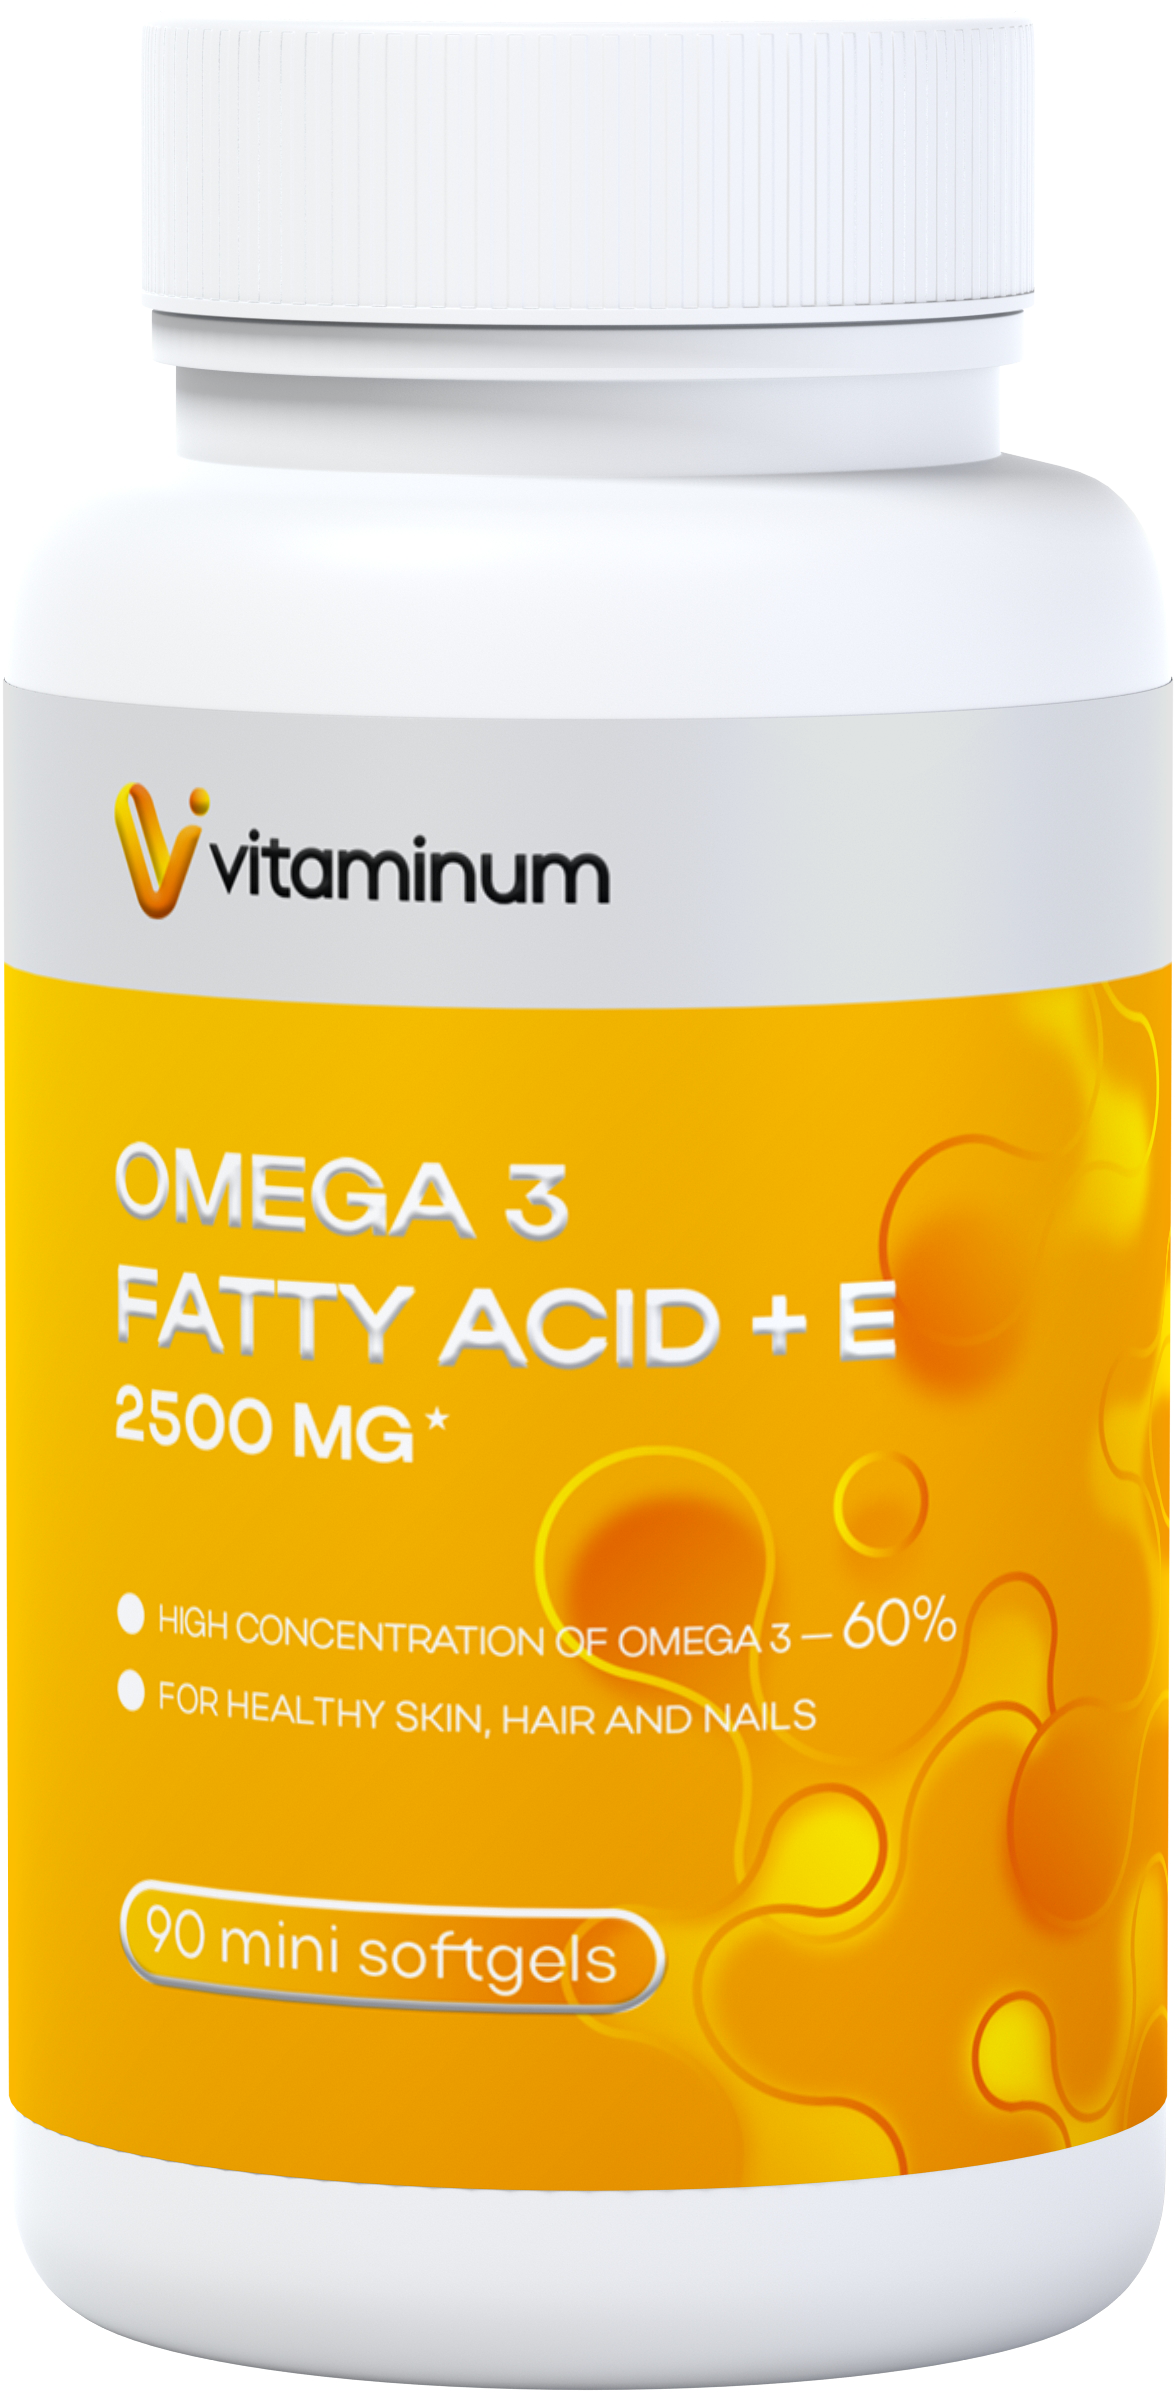  Vitaminum ОМЕГА 3 60% + витамин Е (2500 MG*) 90 капсул 700 мг  в Волгодонске